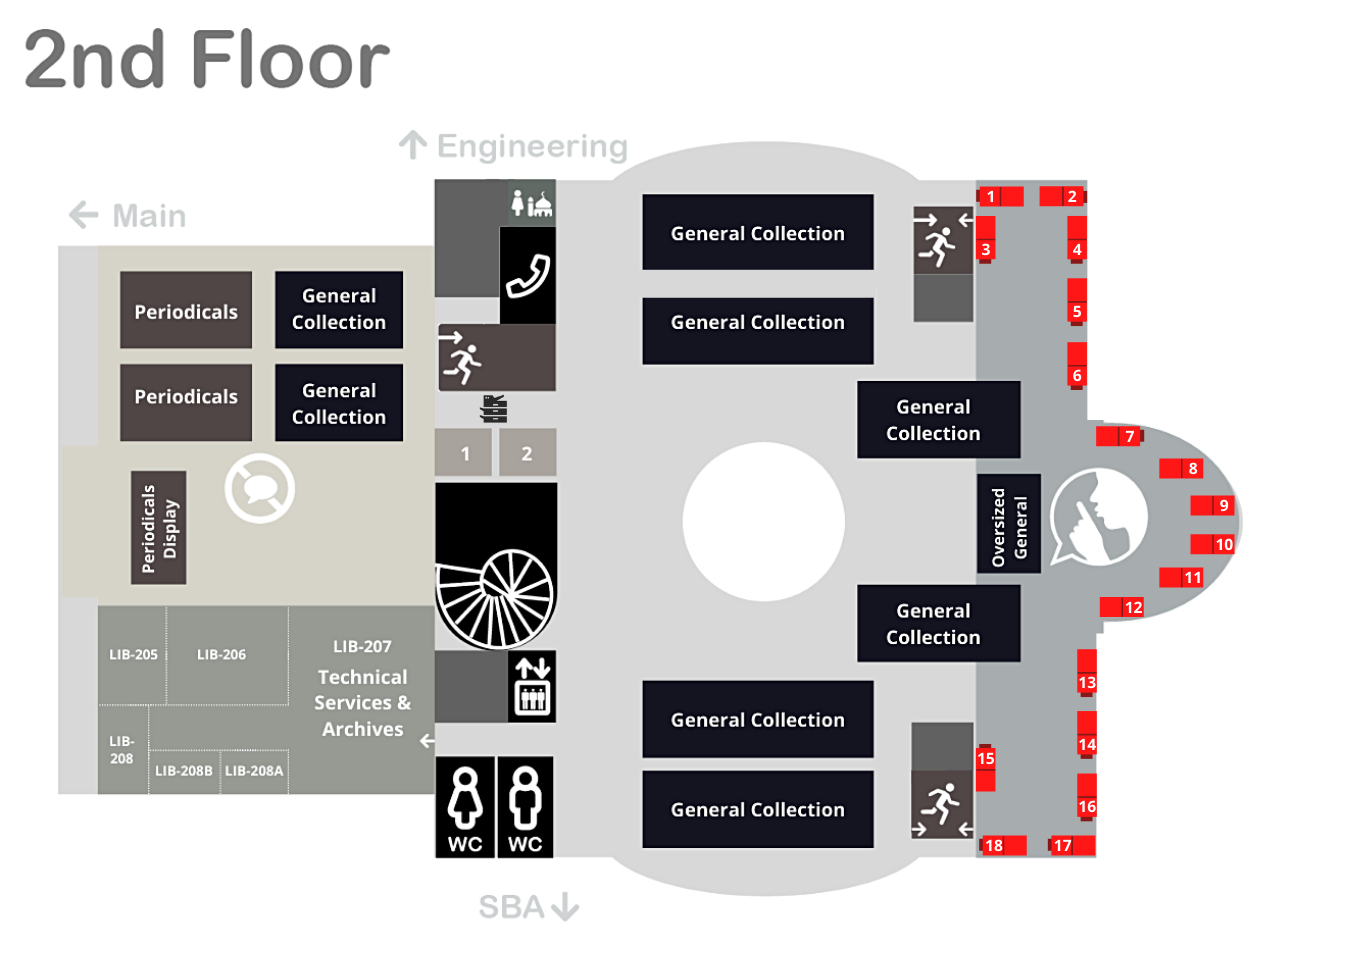 Single Carrel Desk quiet zone 2nd Floor Map